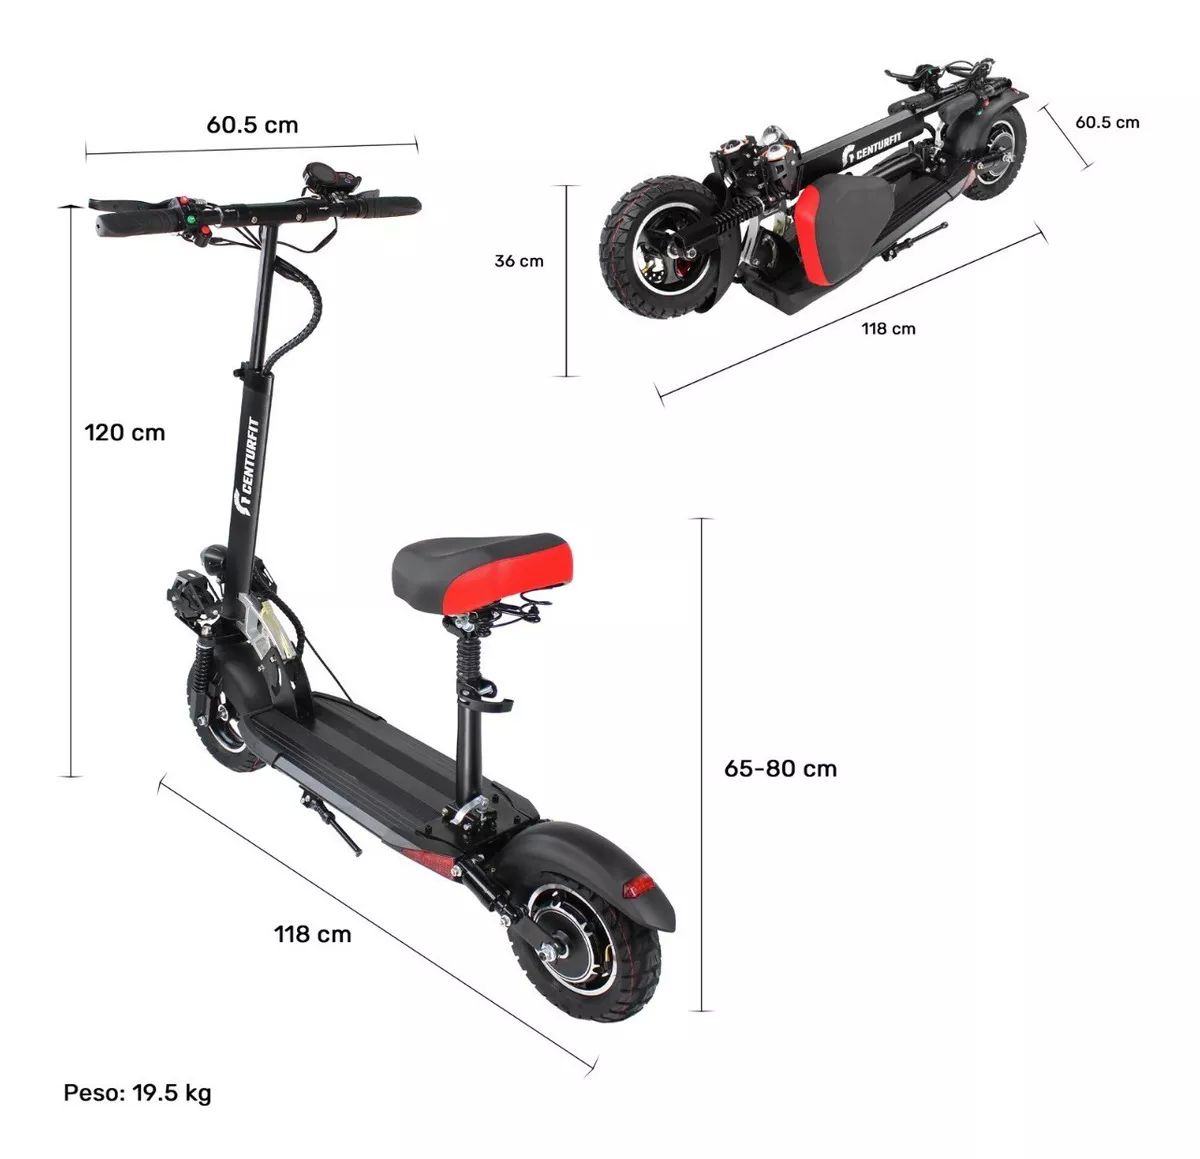 Scooter Electrico Nuevos Plegable 350-500w